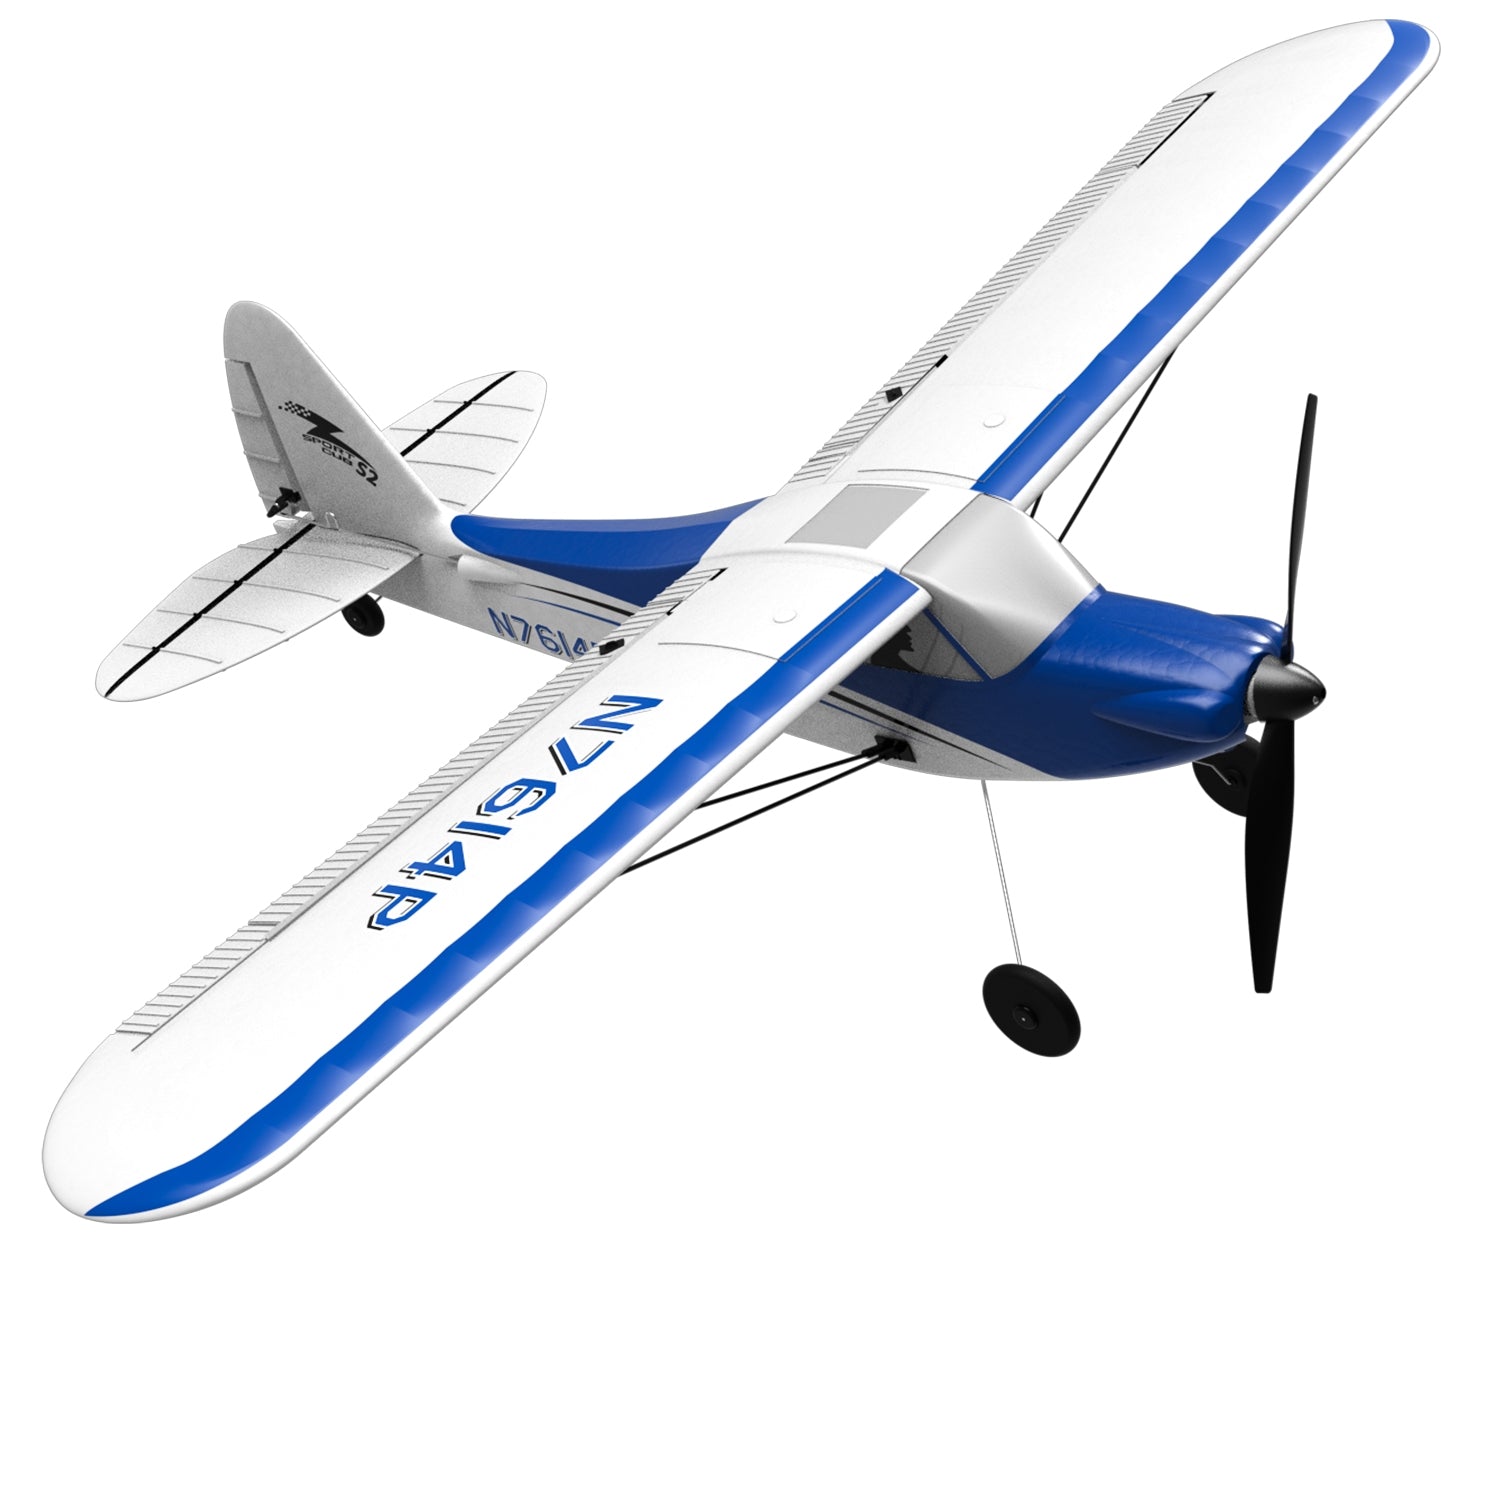 VOLANTEXRC Sport Cub 500 4Ch RC Avion d'entraînement avec gyroscope à 6 axes One-key Aerobatic Park Flyer (761-4) RTF Bleu